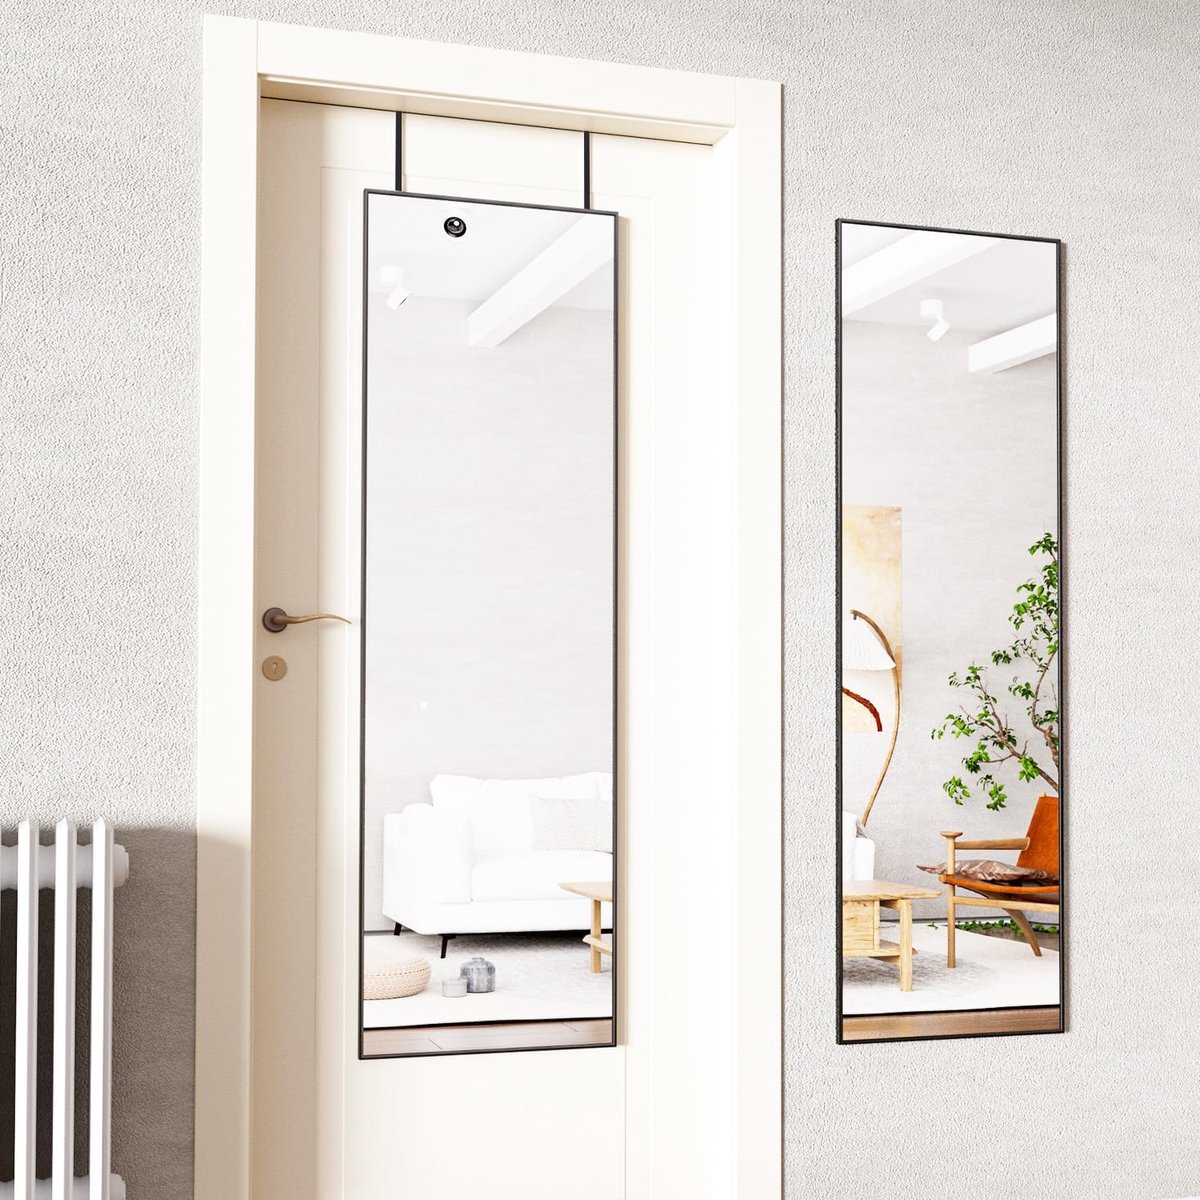 Deurspiegel full-body-spiegel 41 x 127 cm wandspiegel met 2 in hoogte verstelbare ophanghaken boven de deur hangspiegel met aluminium frame voor ingangen en slaapkamer zwart